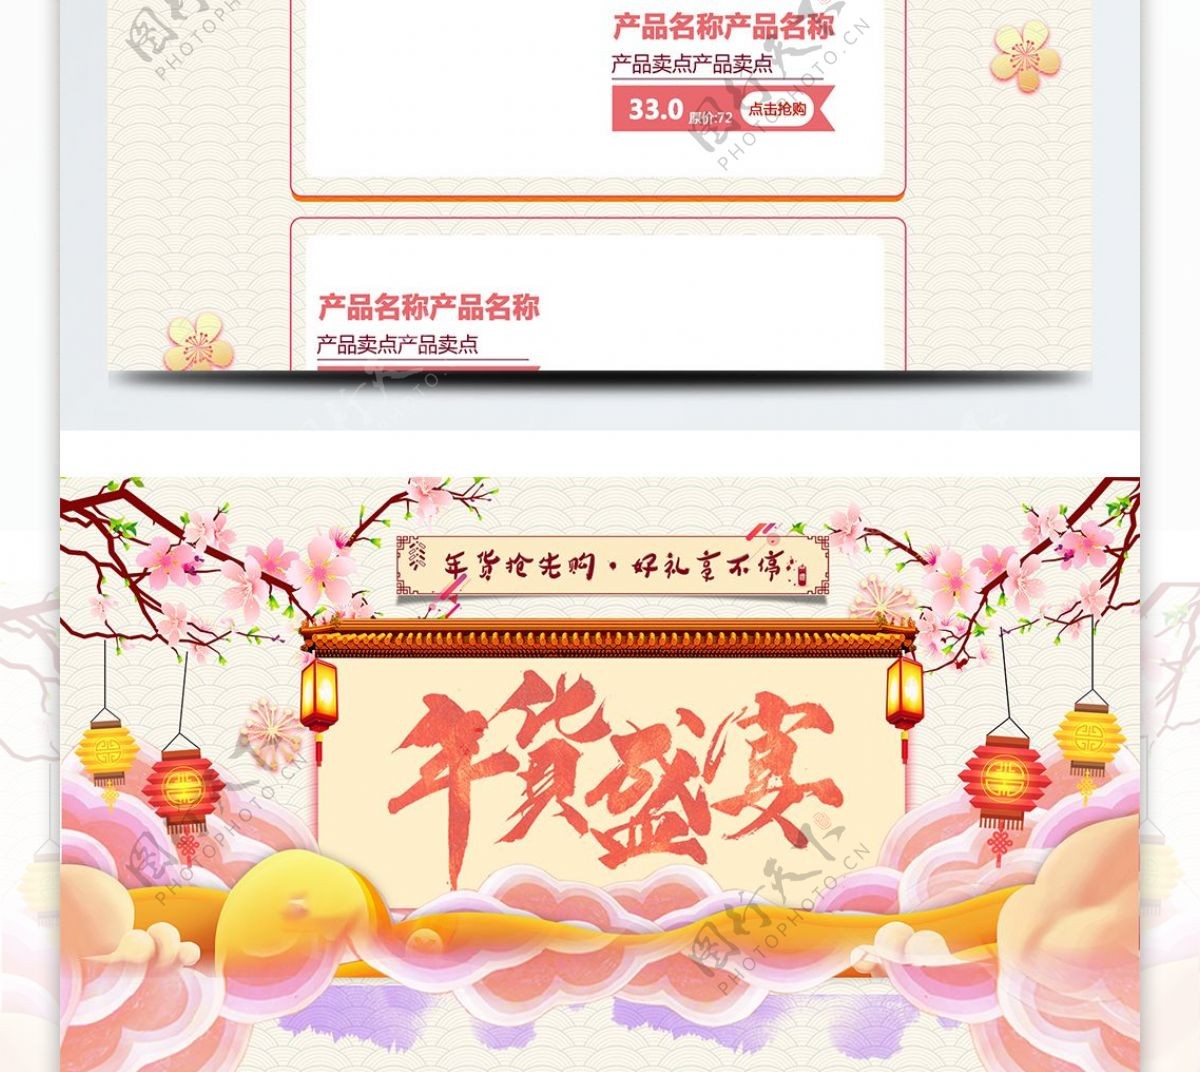 橙黄色喜庆电商促销年货节淘宝首页模板